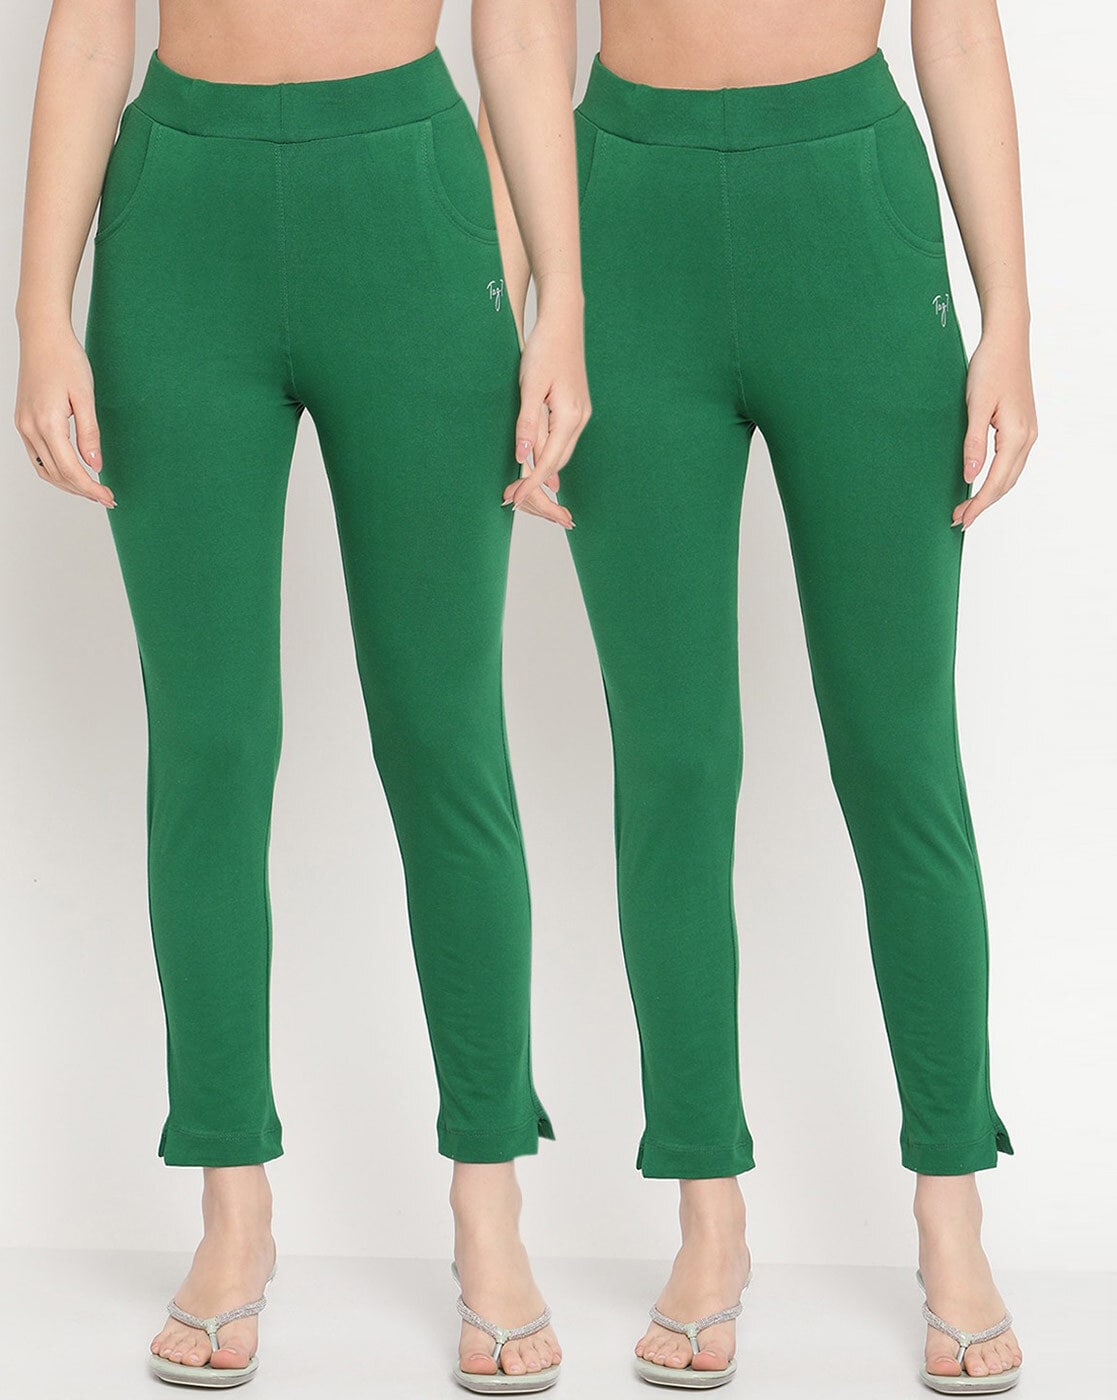 Buy TAG 7 Black & Dark Green Leggings - Pack of 2 for Women's